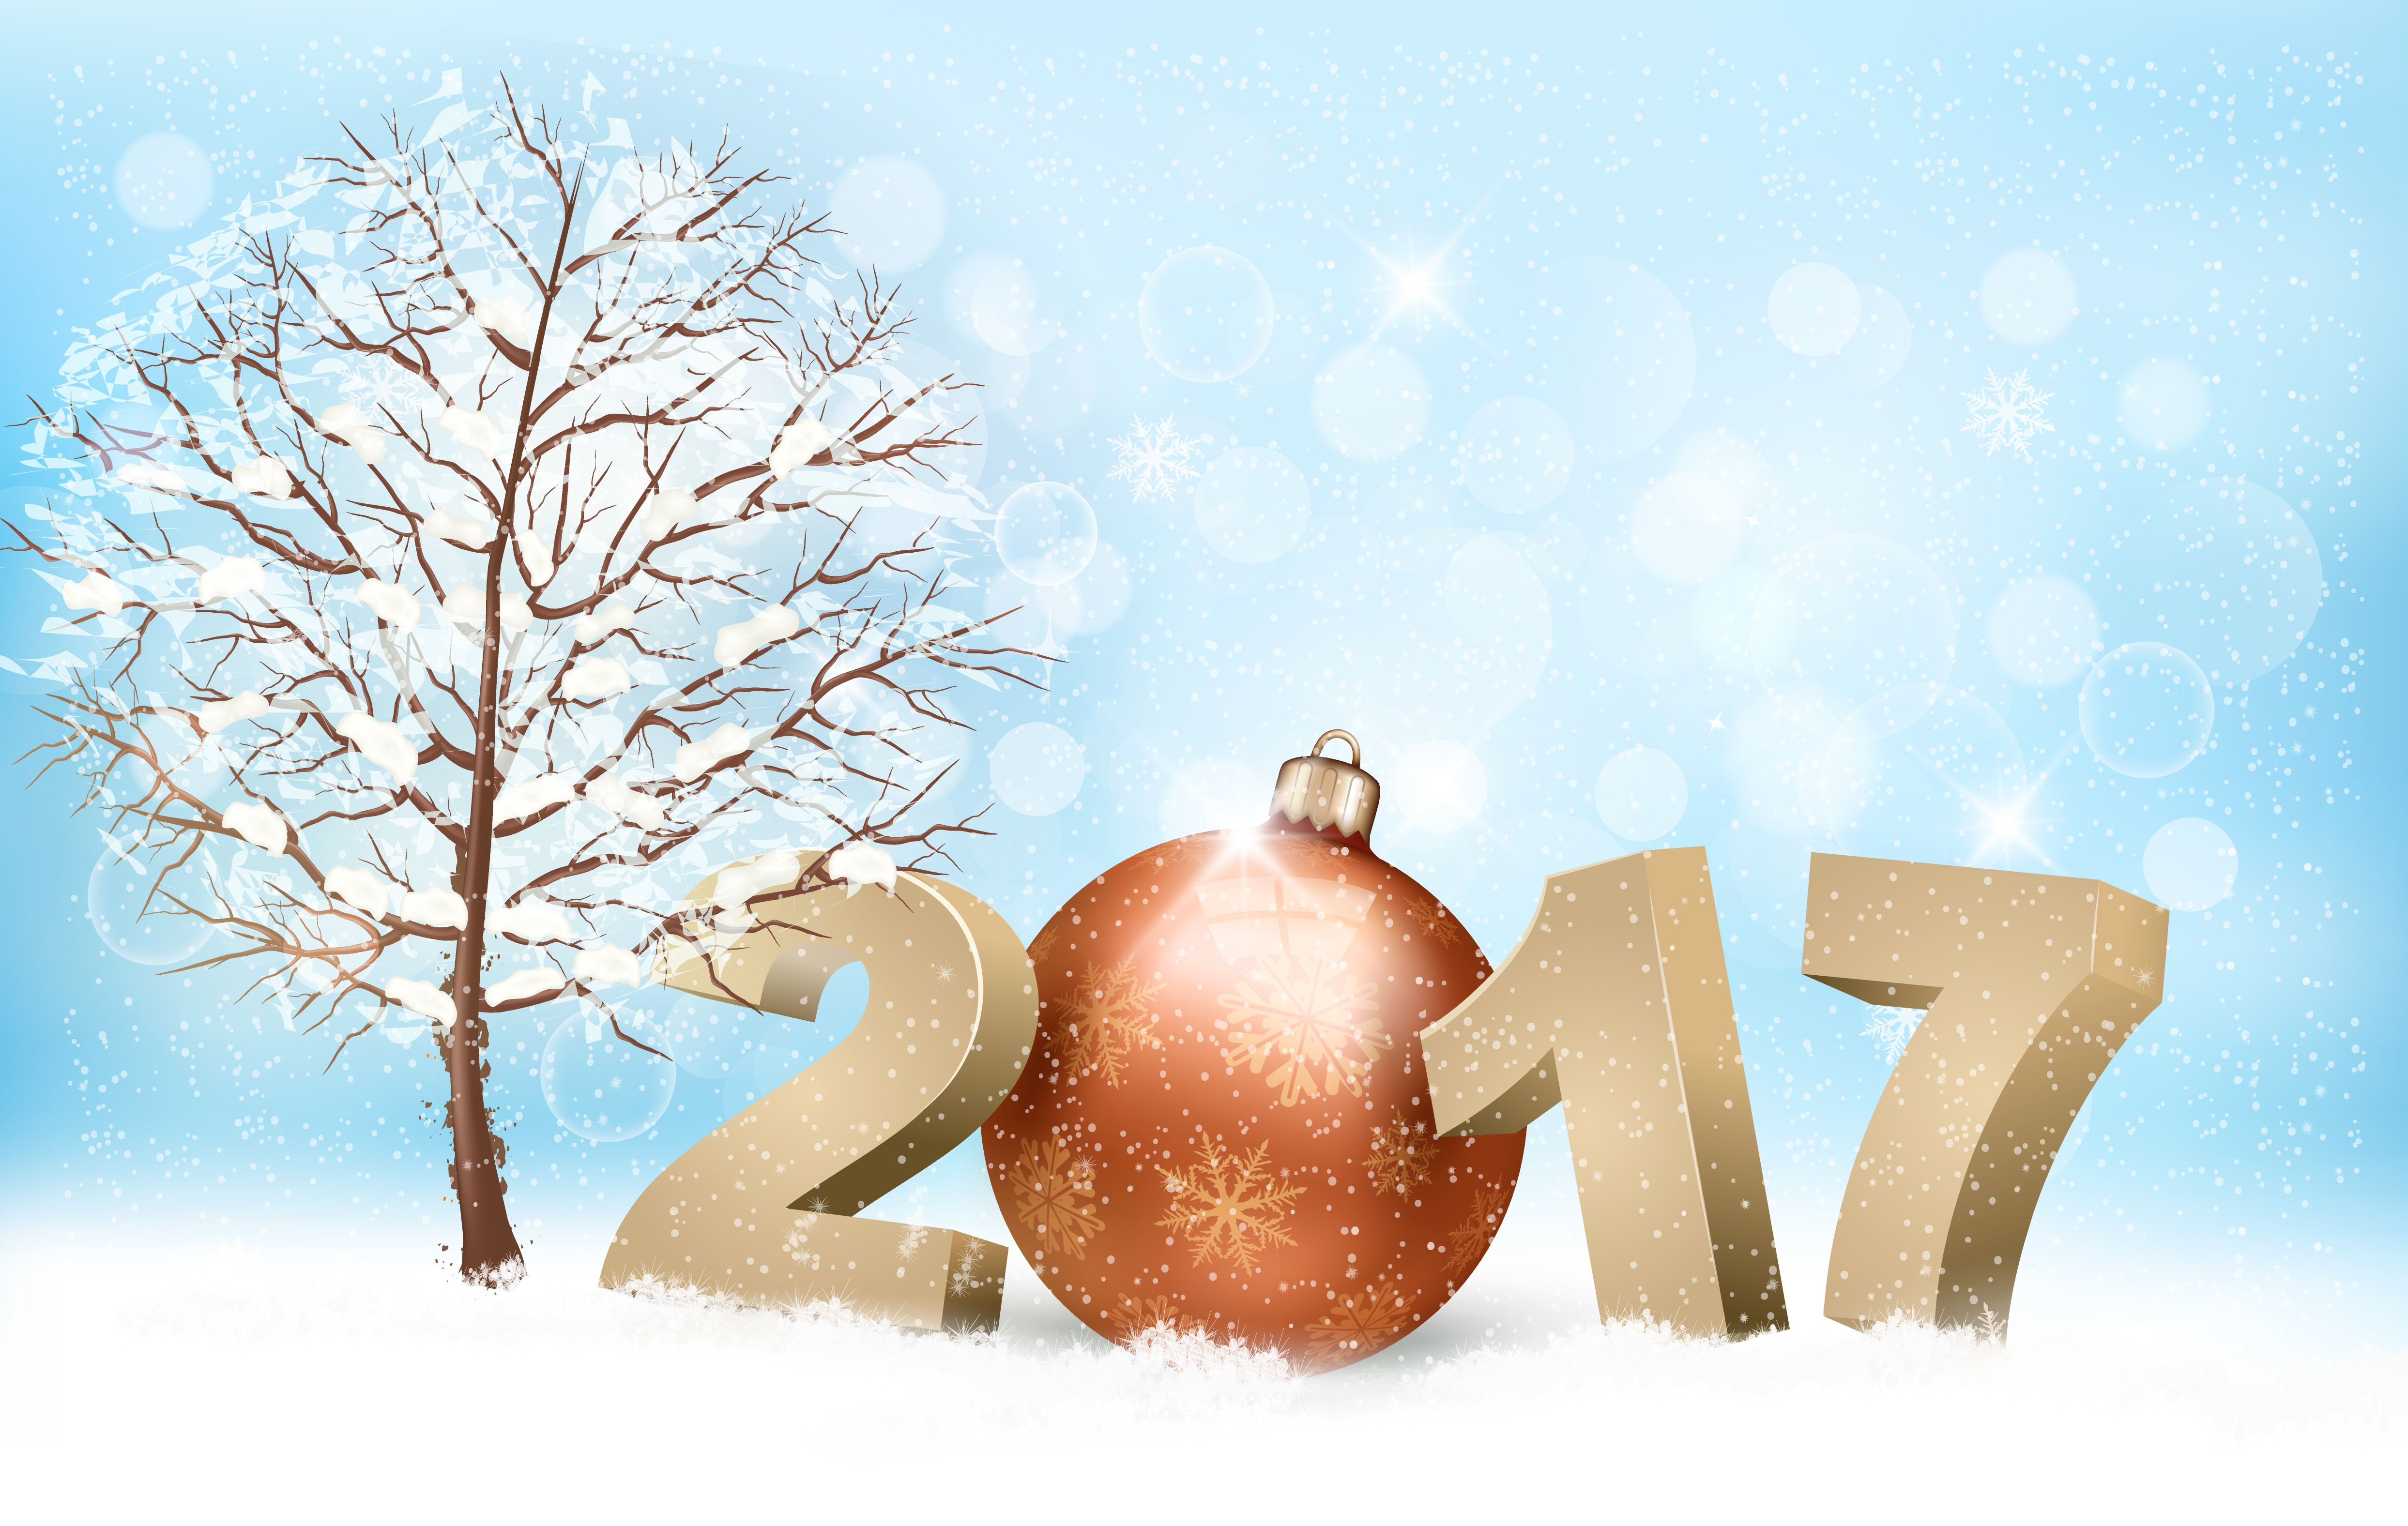 Обои с новым 2017 годом новогодние обои на 2017 год с новым годом на рабочий стол